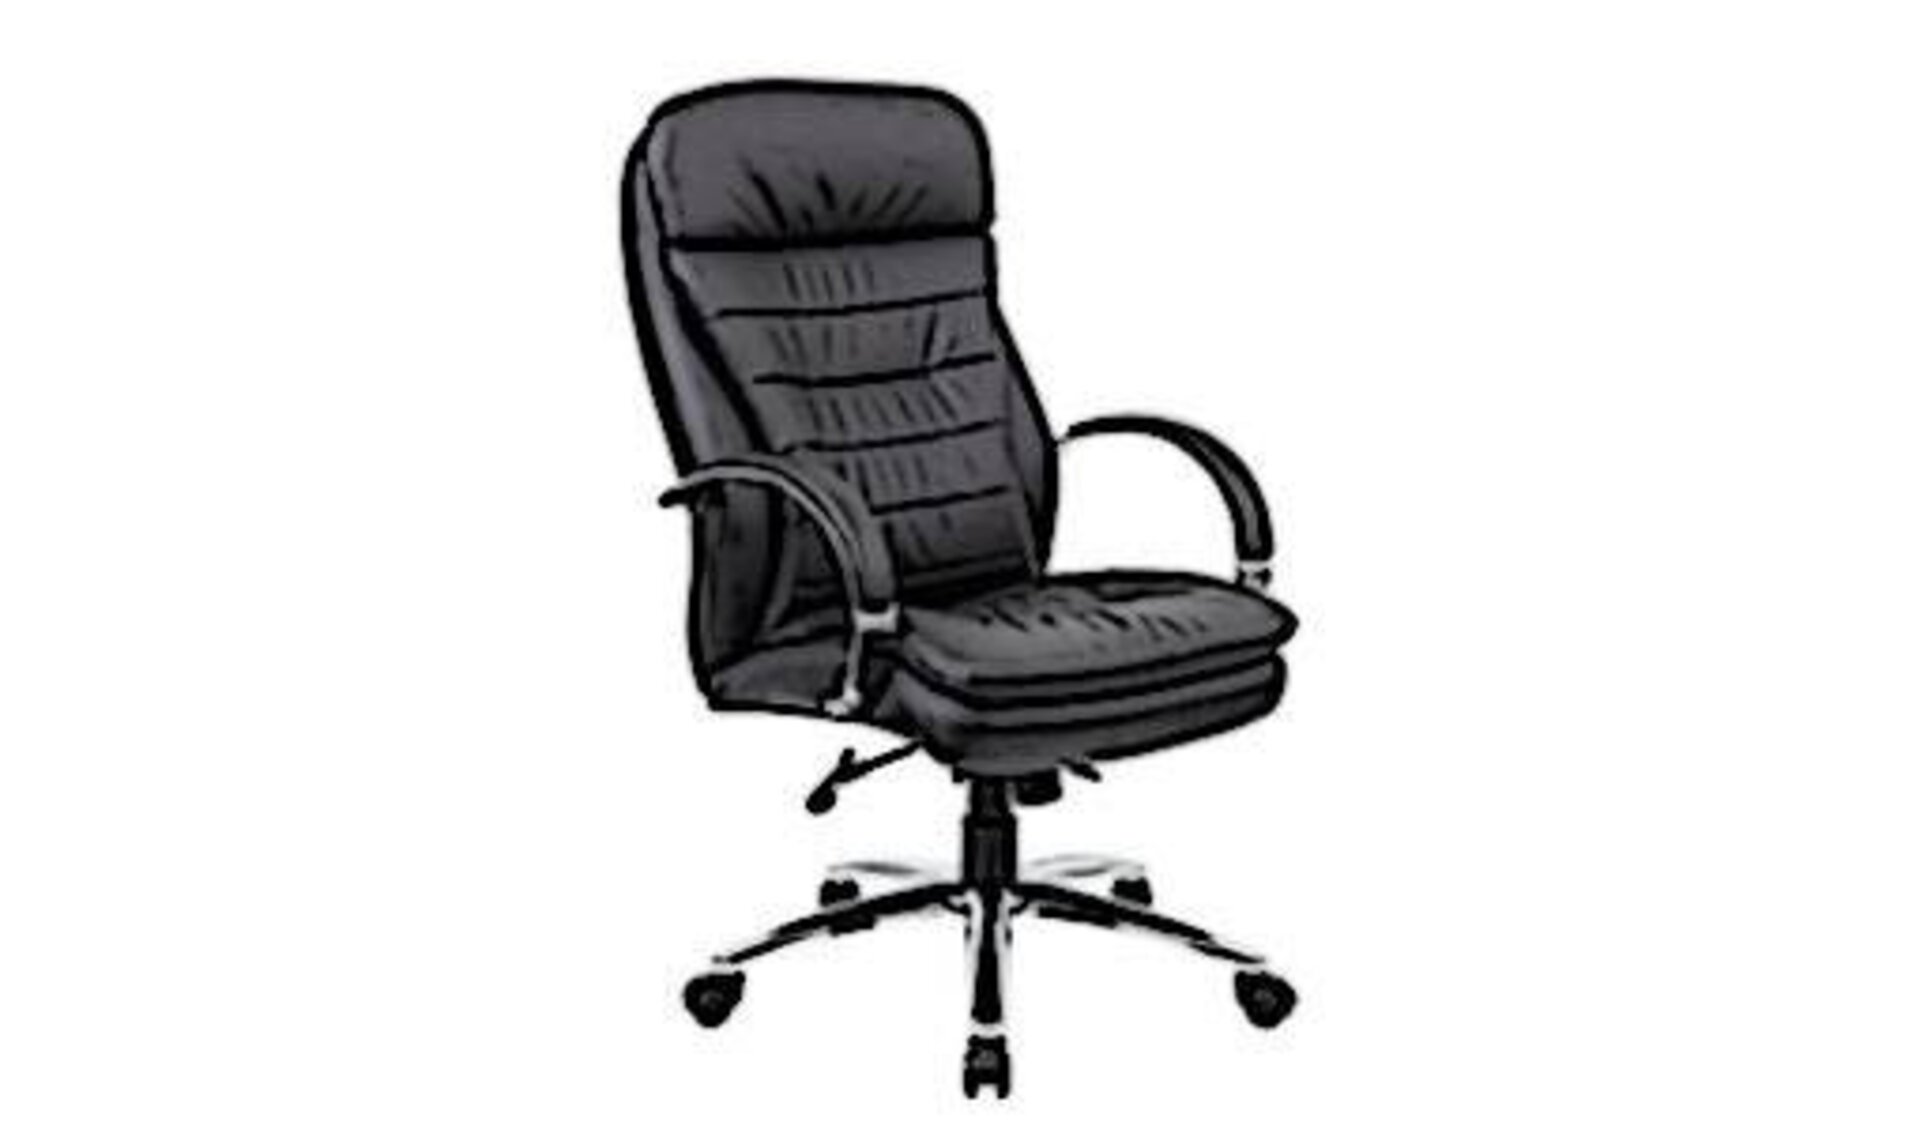 Chefsessel aus dunklem Glattleder, dick gepolsterter Sitzfläche und Rückenlehne, sowie geschwungene Armlehnen. Die Abbildung steht für alle Chefsessel innerhalb der Kategorie der Bürostühle.